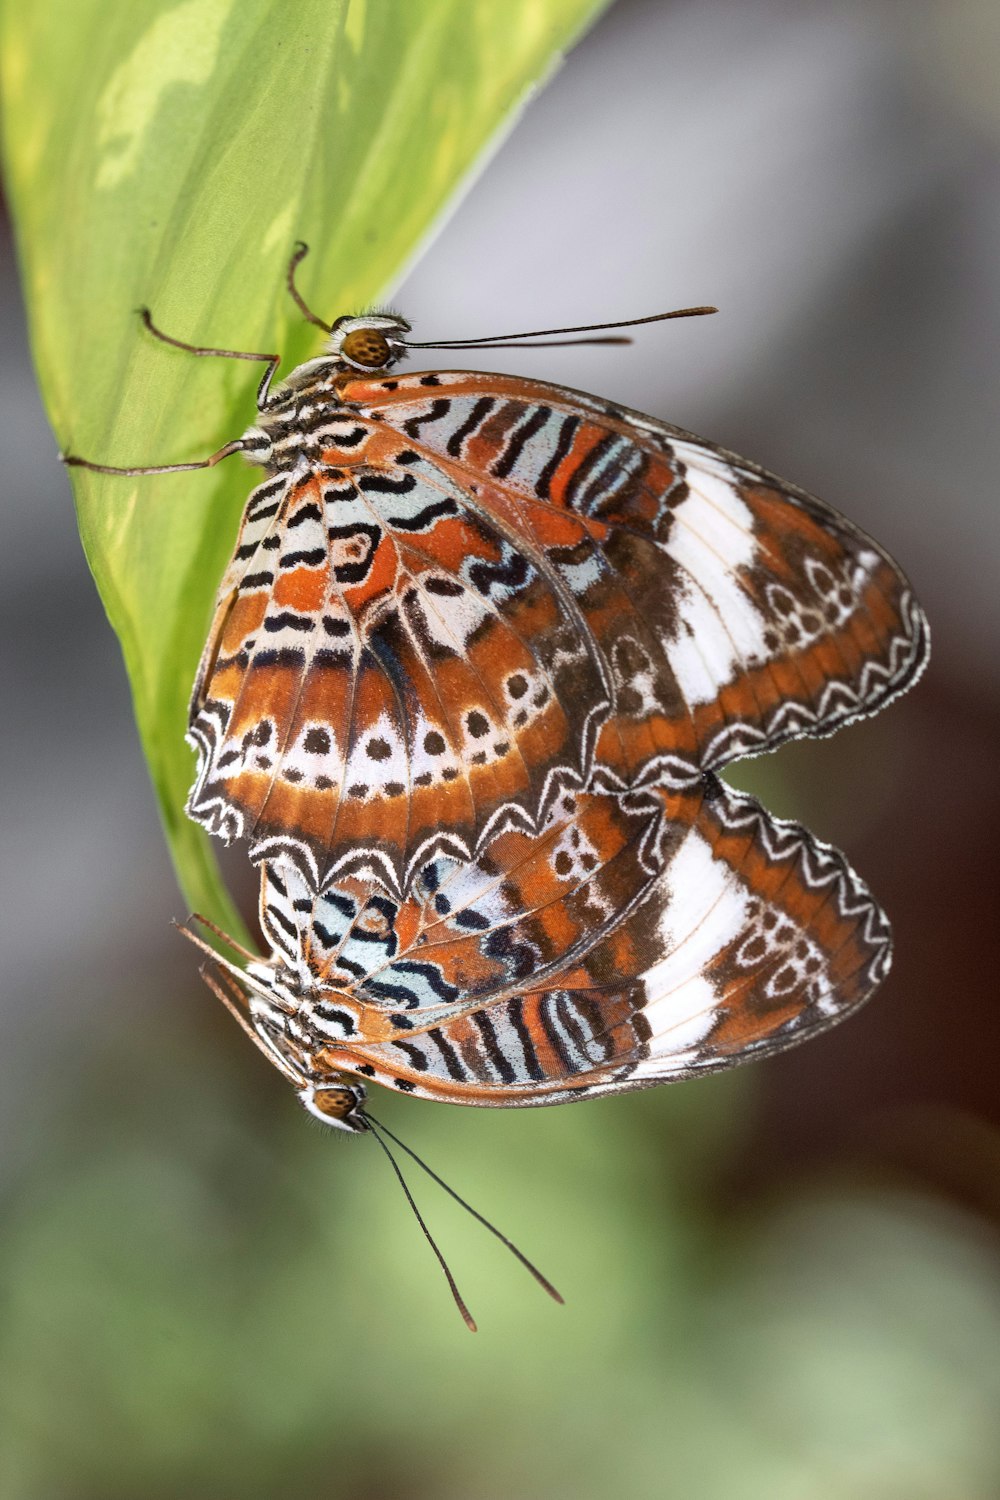 borboleta marrom e branca empoleirada na folha verde em fotografia de perto durante o dia